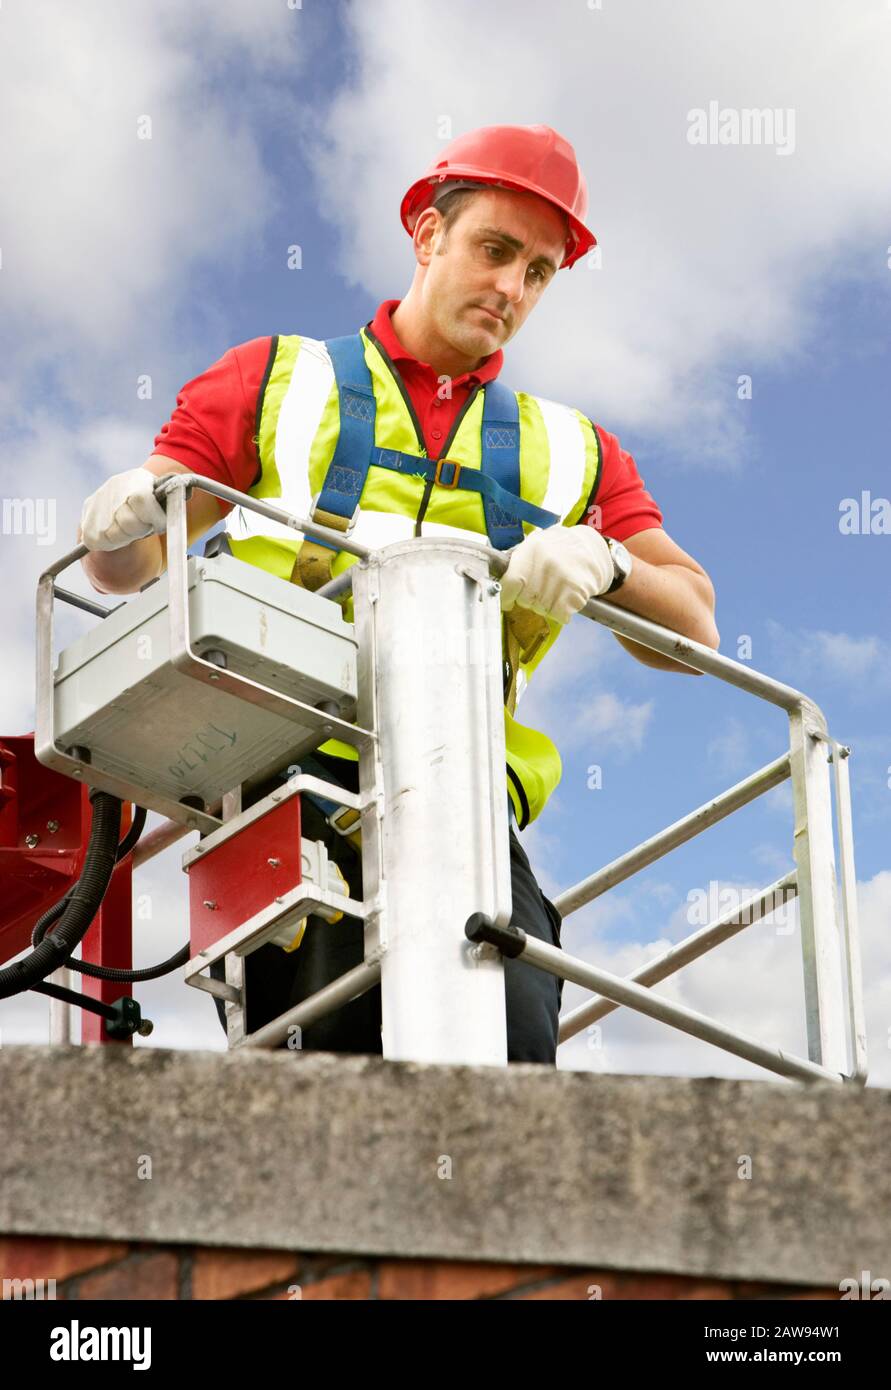 Arbeitsmann in einem Kirschpflücker, der Sicherheitskleidung trägt und ein Dach inspiziert Stockfoto